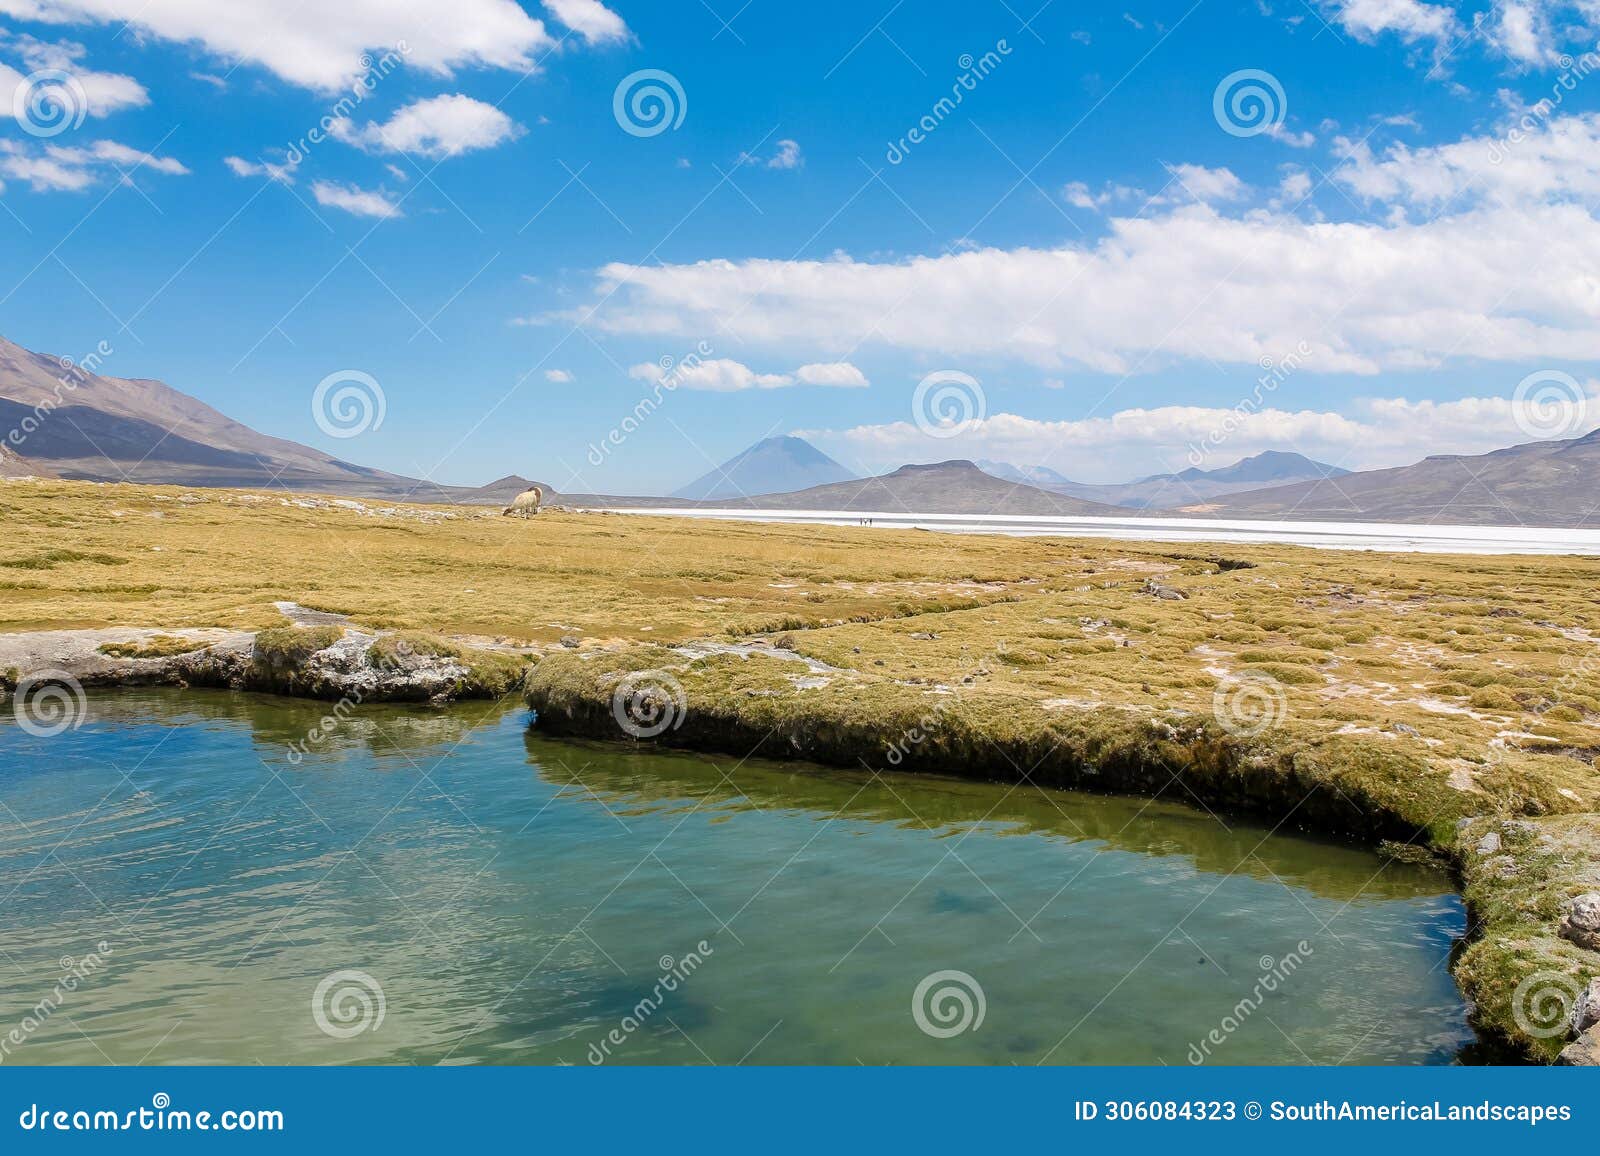 salar on south america altiplano, reserva natural de salinas y aguada blanca